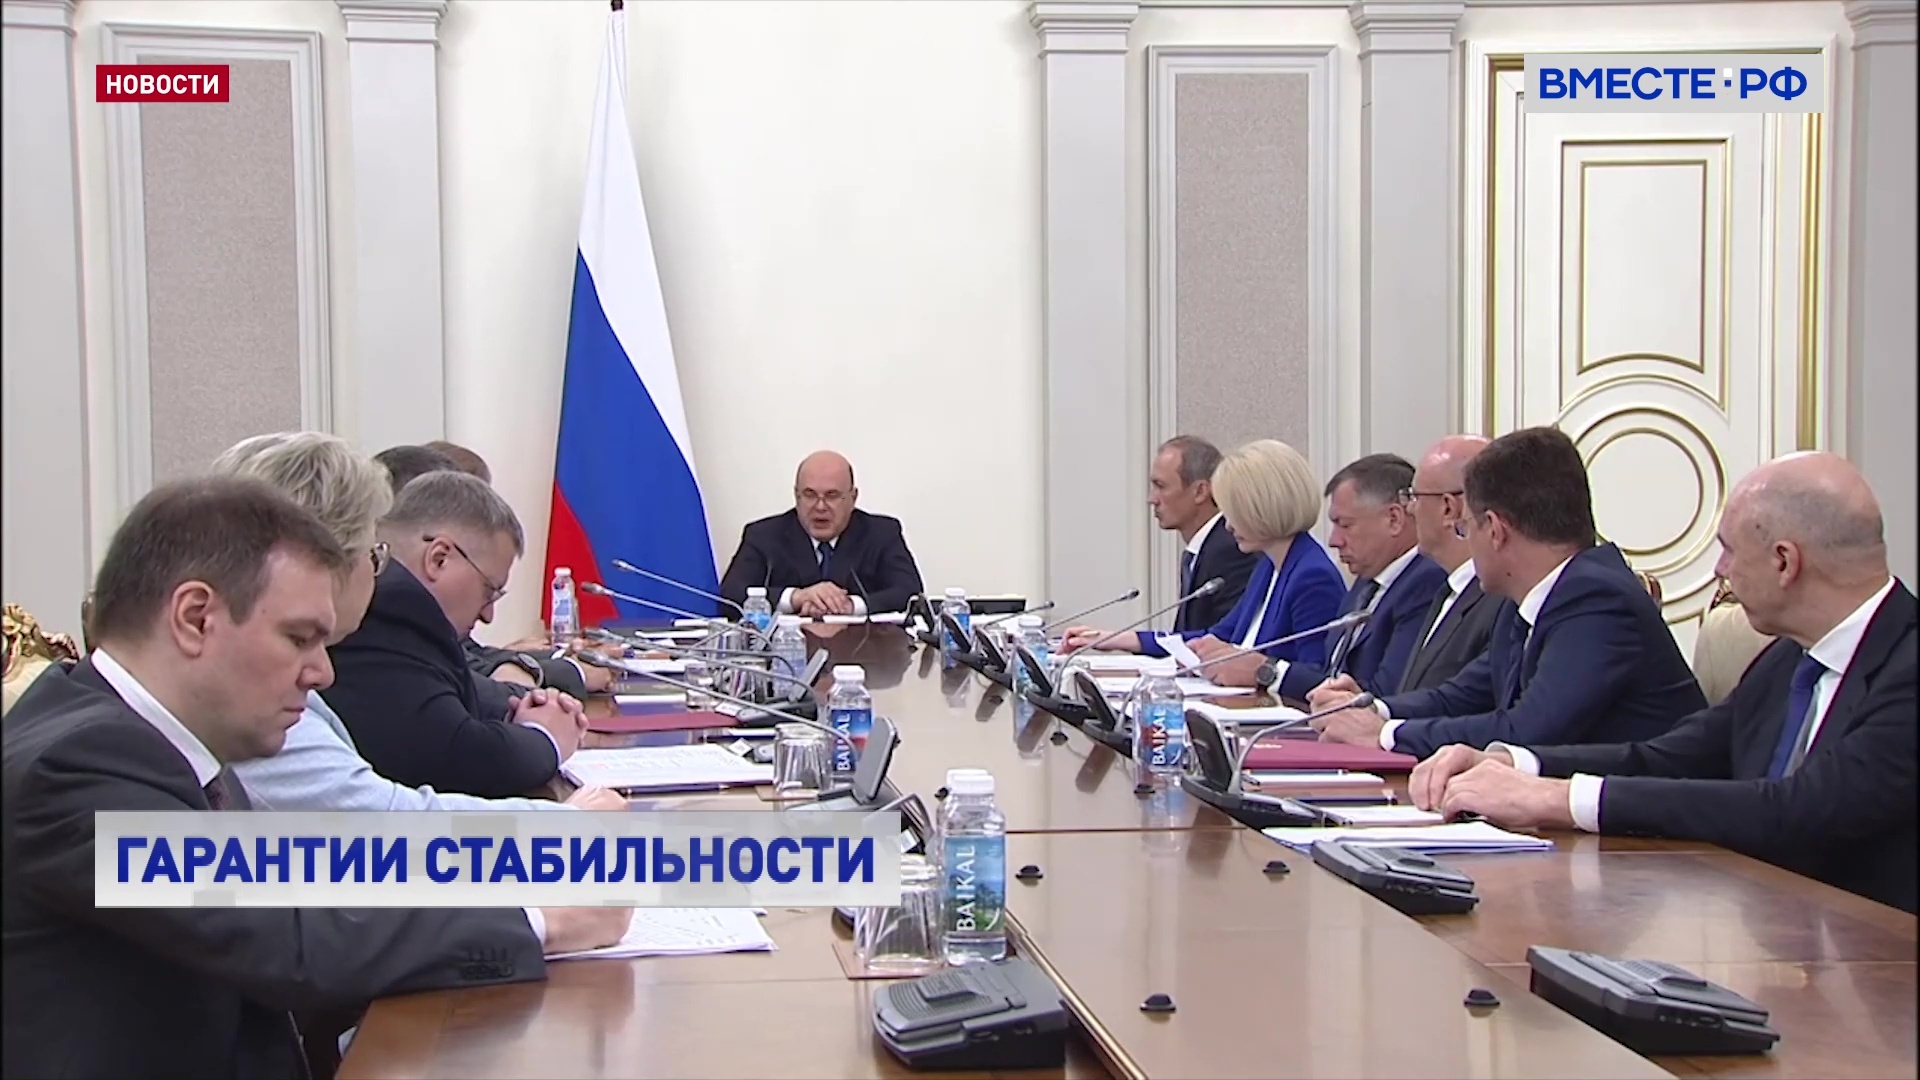 Правительство РФ обсудило меры, предпринятые после попытки дестабилизировать ситуацию внутри страны